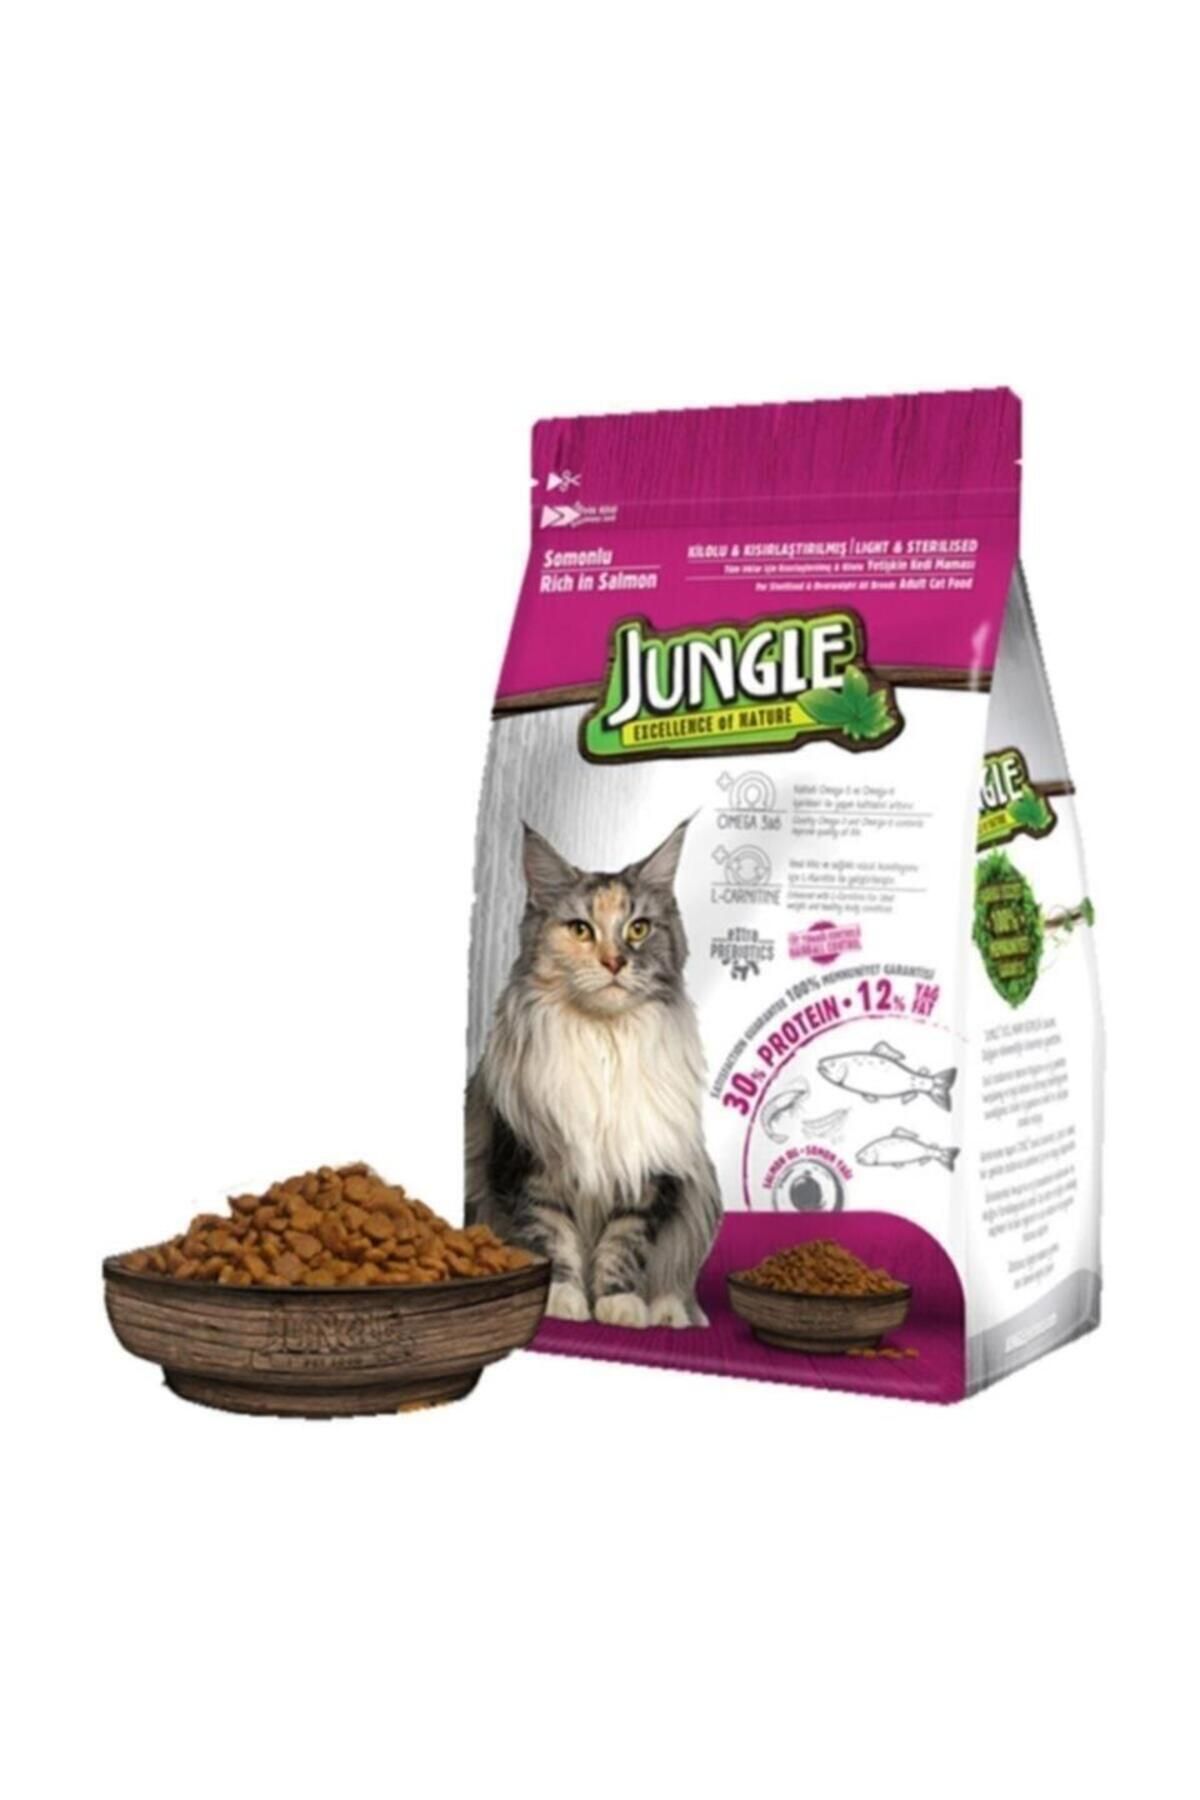 Jungle Somonlu Sterilesed Kısırlaştırılmış Kedi Maması 500 gr